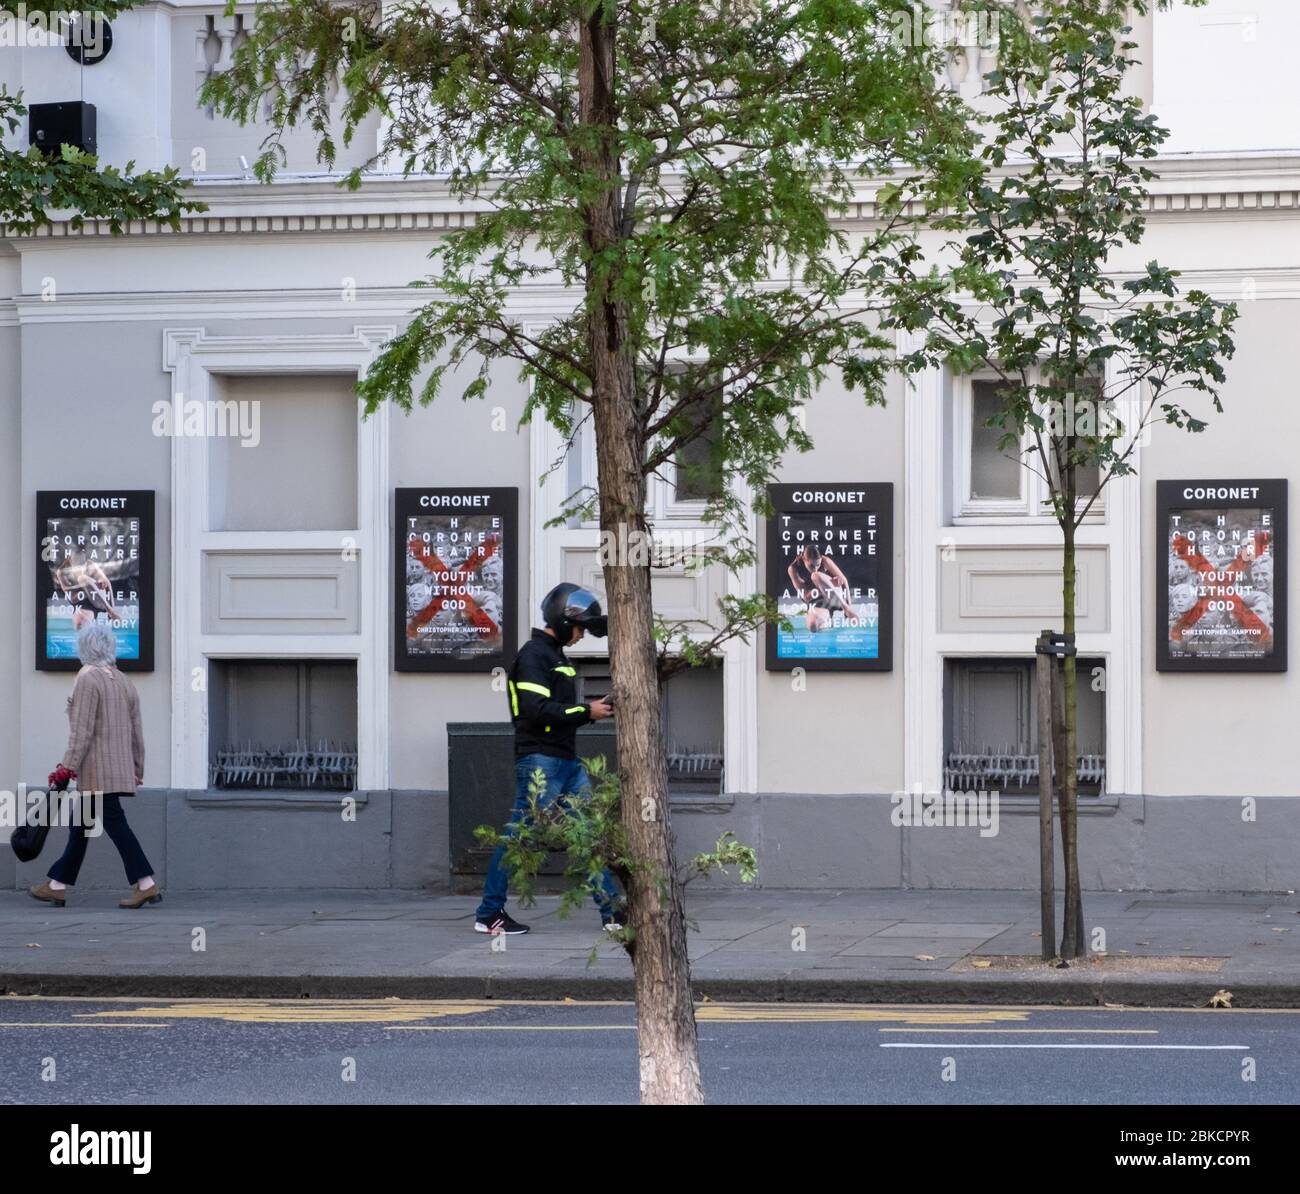 Deux personnes marchent près du théâtre Coronet, affichant des affiches pour des productions un autre regard sur mémoire et Jeunesse sans Dieu, Notting Hill, West London. Banque D'Images